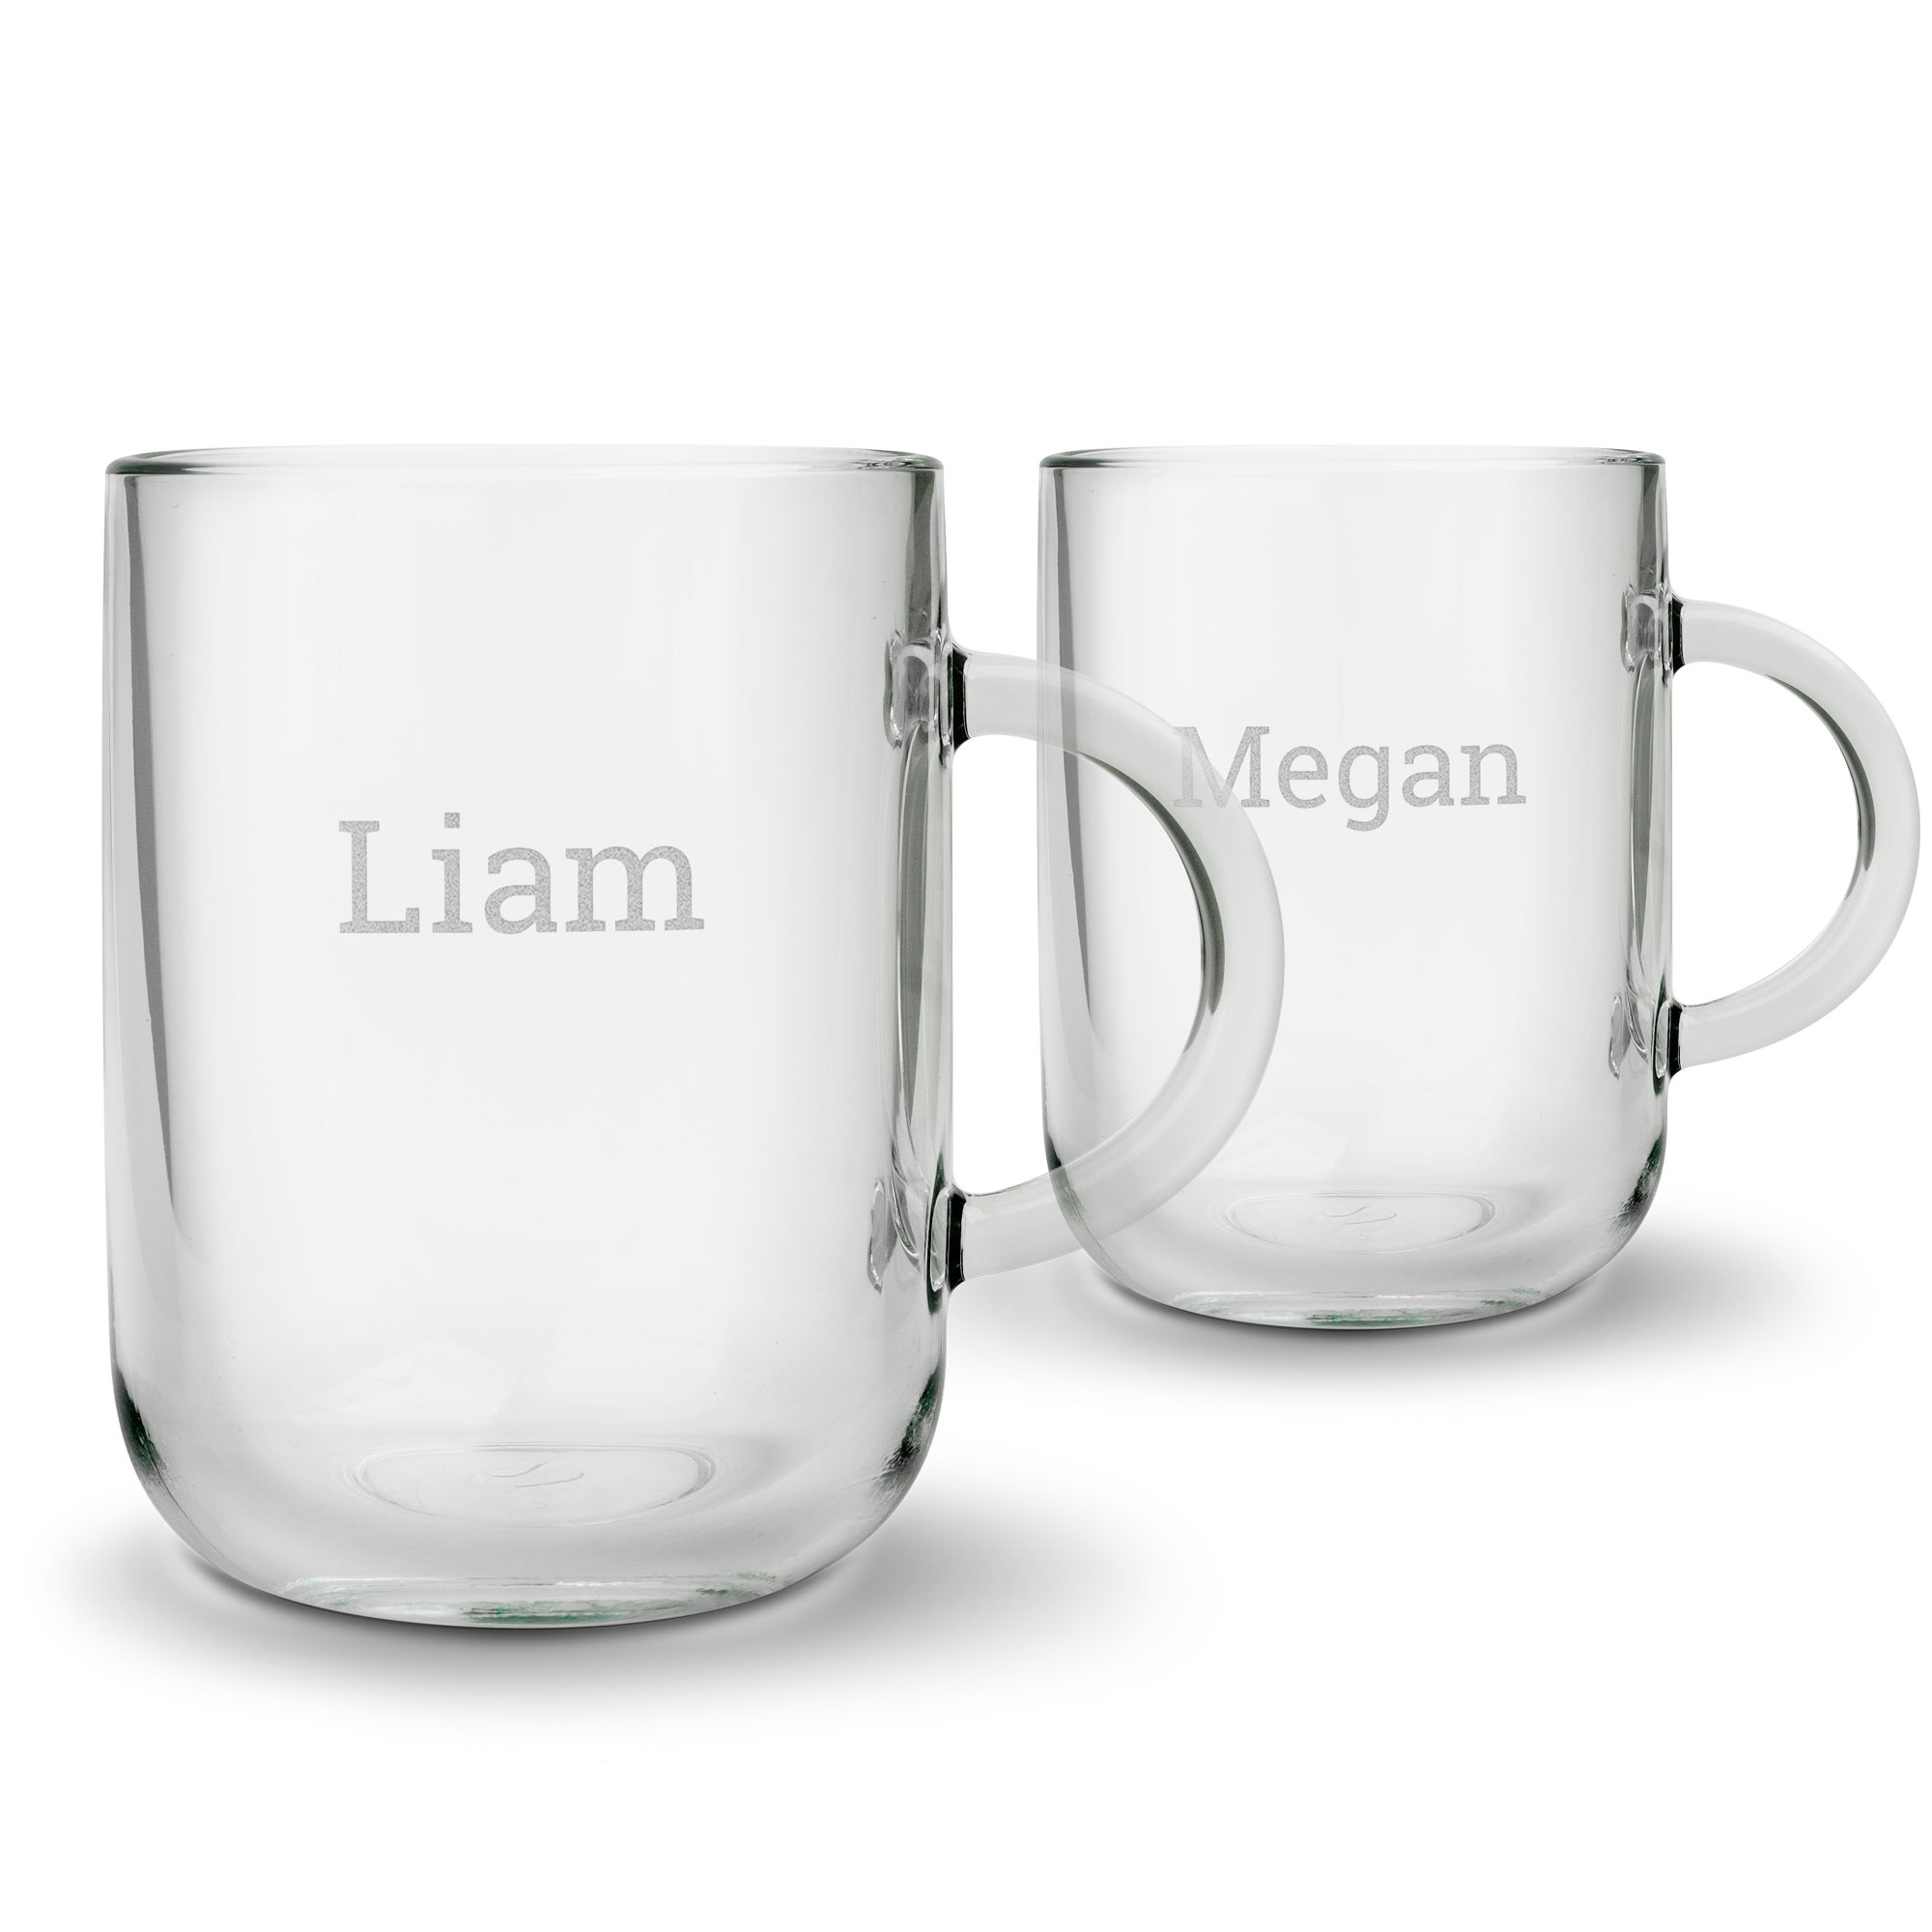 Personalised glass mug - Round - 2 pcs - Engraved